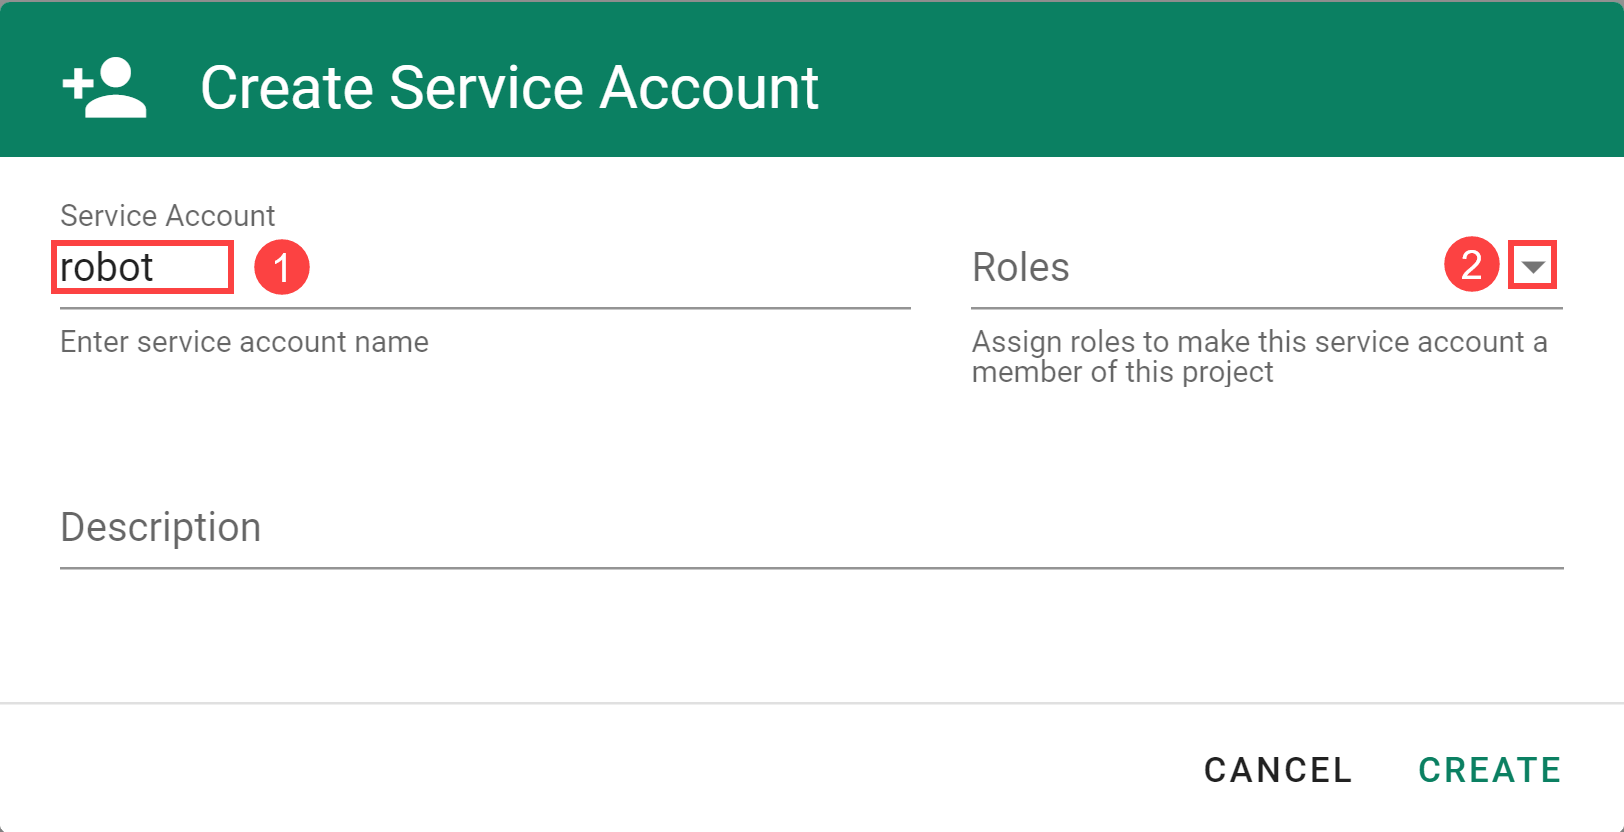 Enter service account details